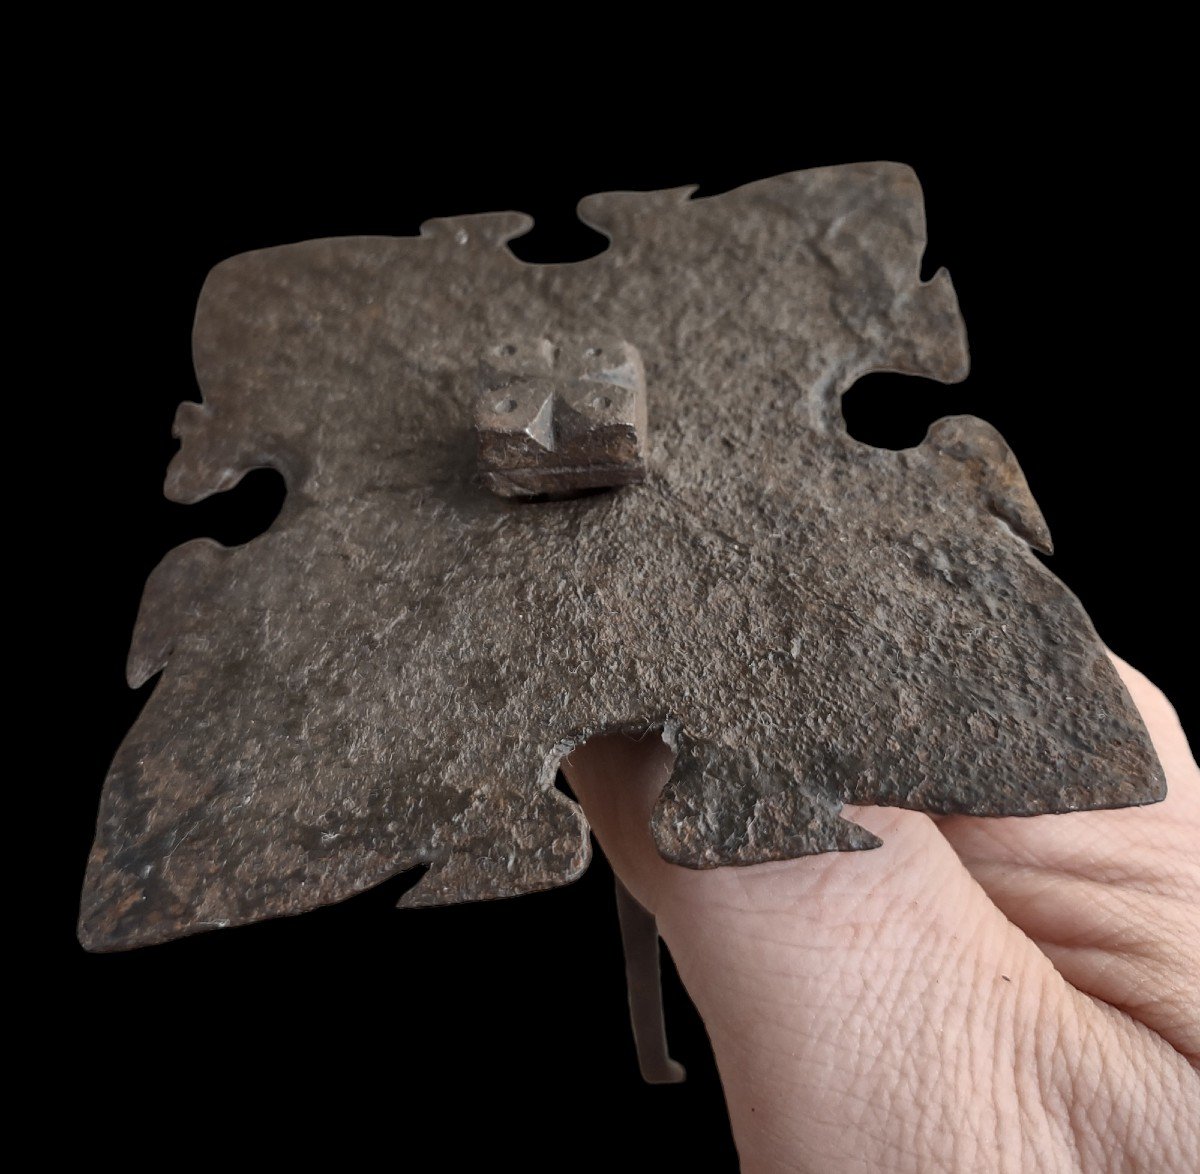 3 Grandi chiodi in ferro forgiato XVII secolo-photo-3